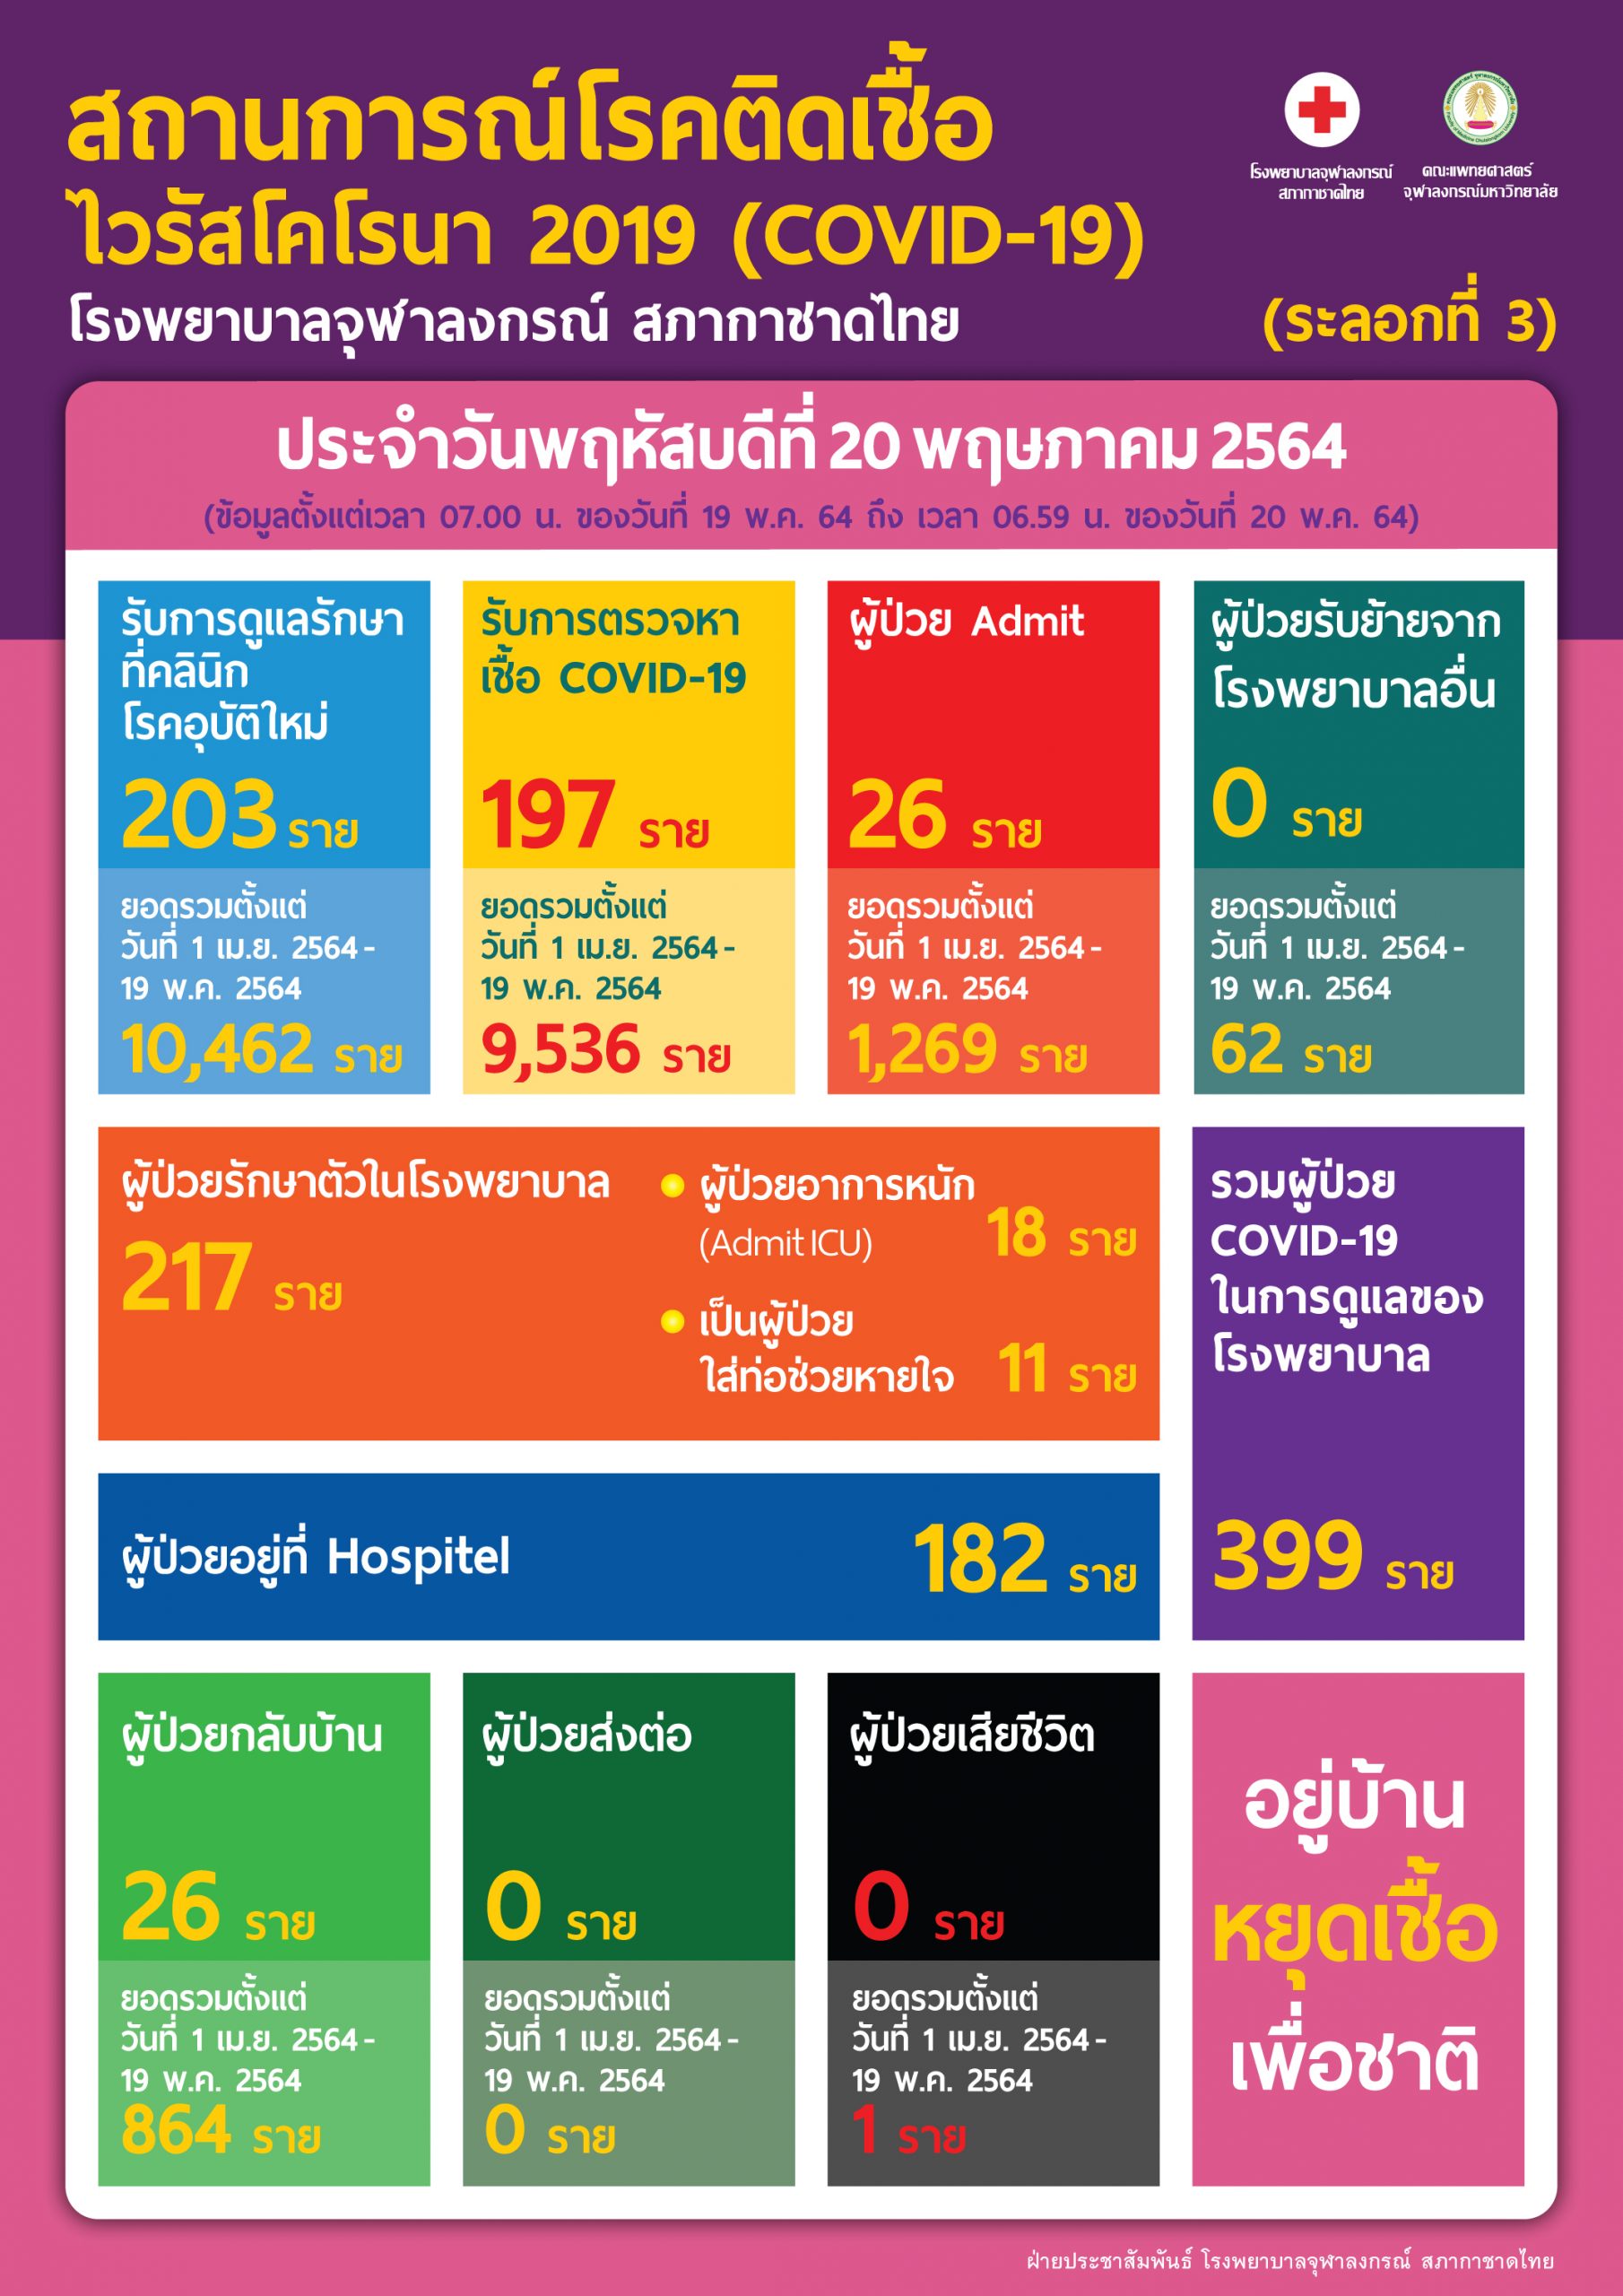 สถานการณ์โรคติดเชื้อ ไวรัสโคโรนา 2019 (COVID-19) โรงพยาบาลจุฬาลงกรณ์ สภากาชาดไทย (ระลอกที่ 3)